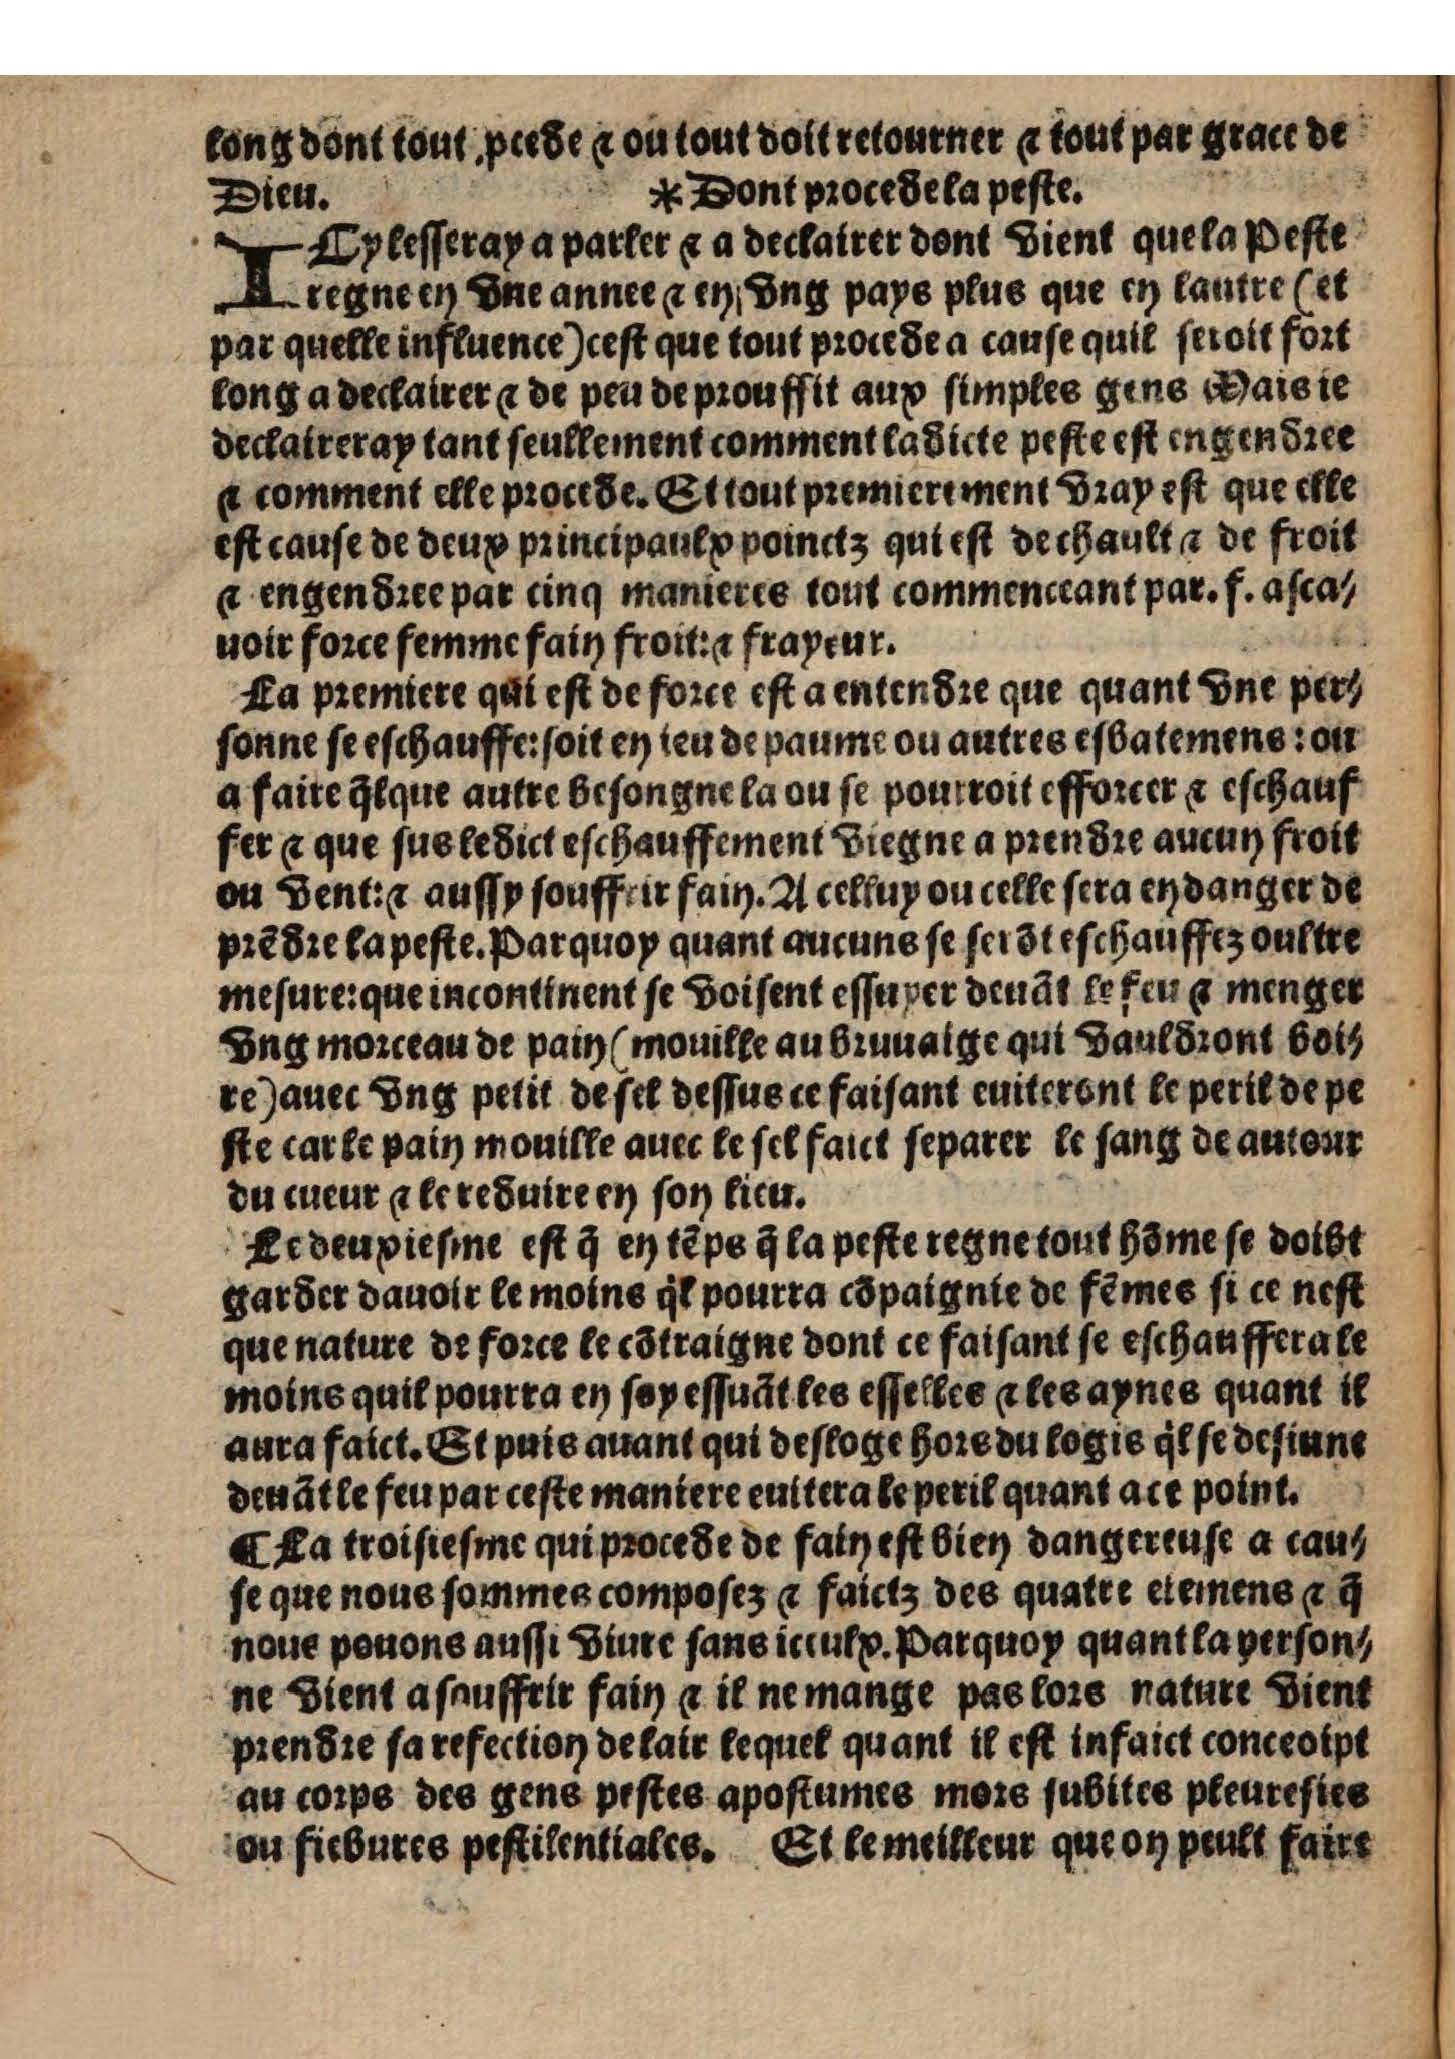 1544 s.n.1 Trésor du remède préservatif et guérison de la peste_British Library_Page_10.jpg